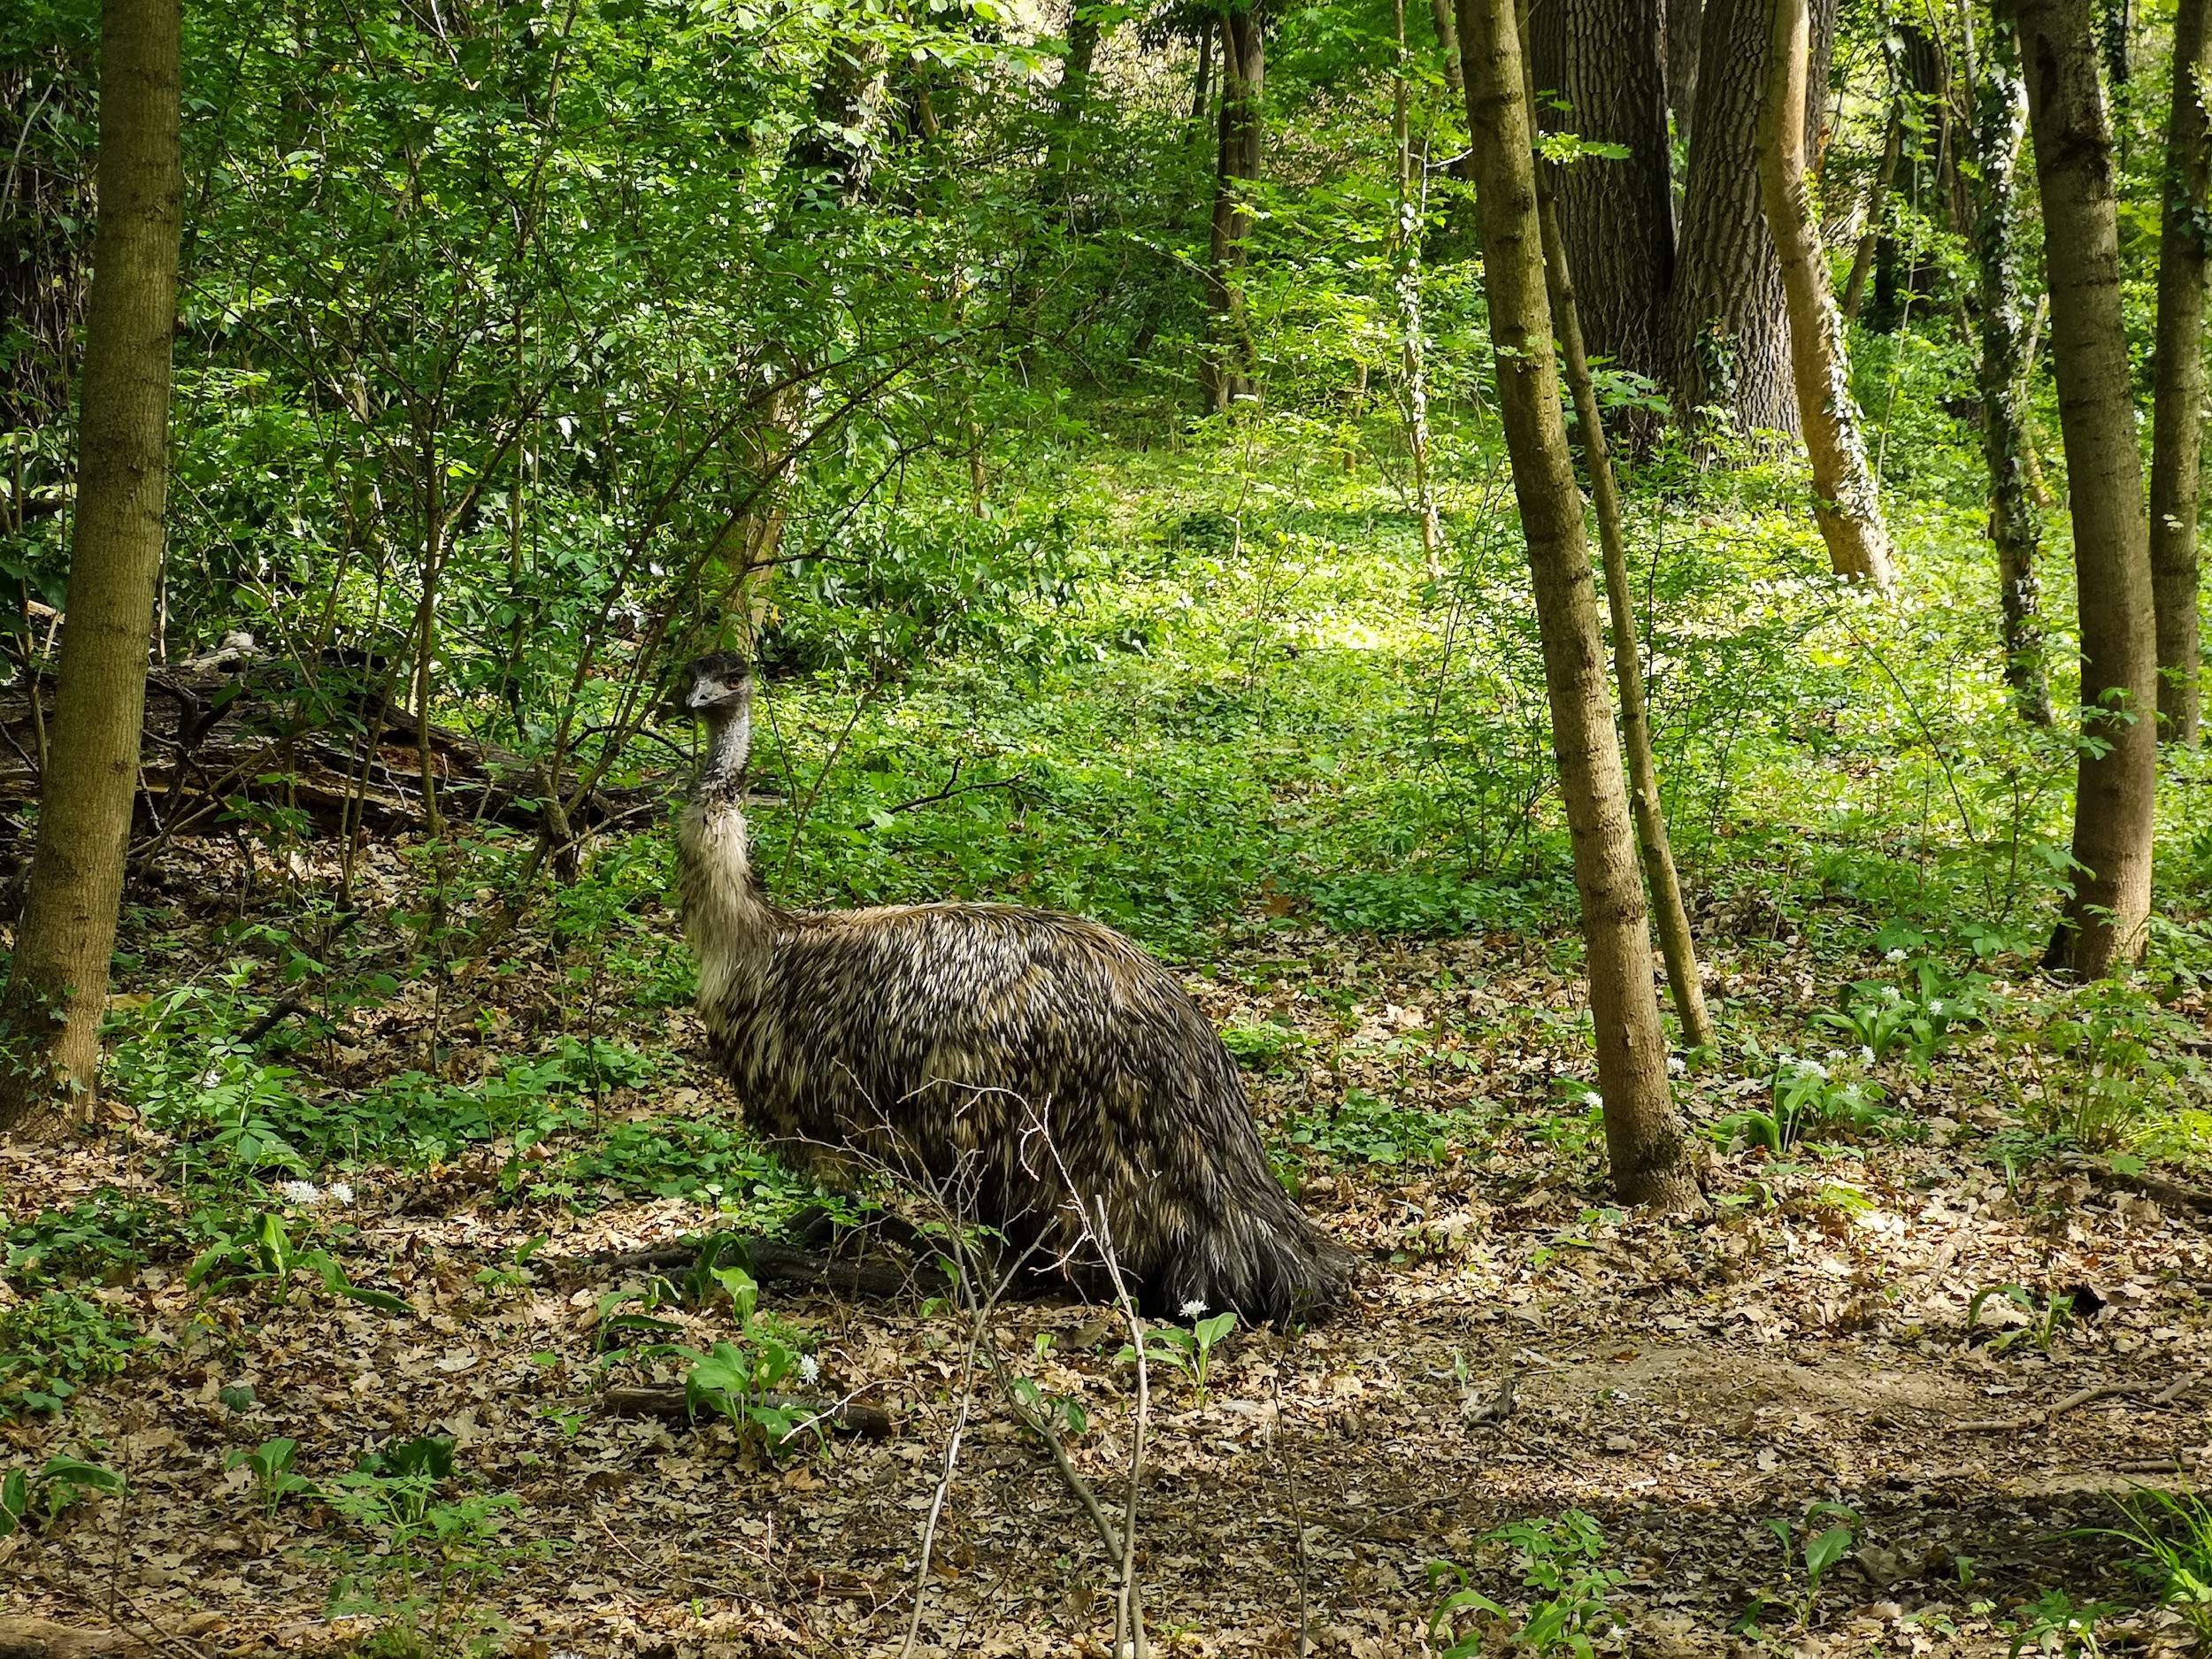 Emu near Schönbrunn Zoo, Vienna